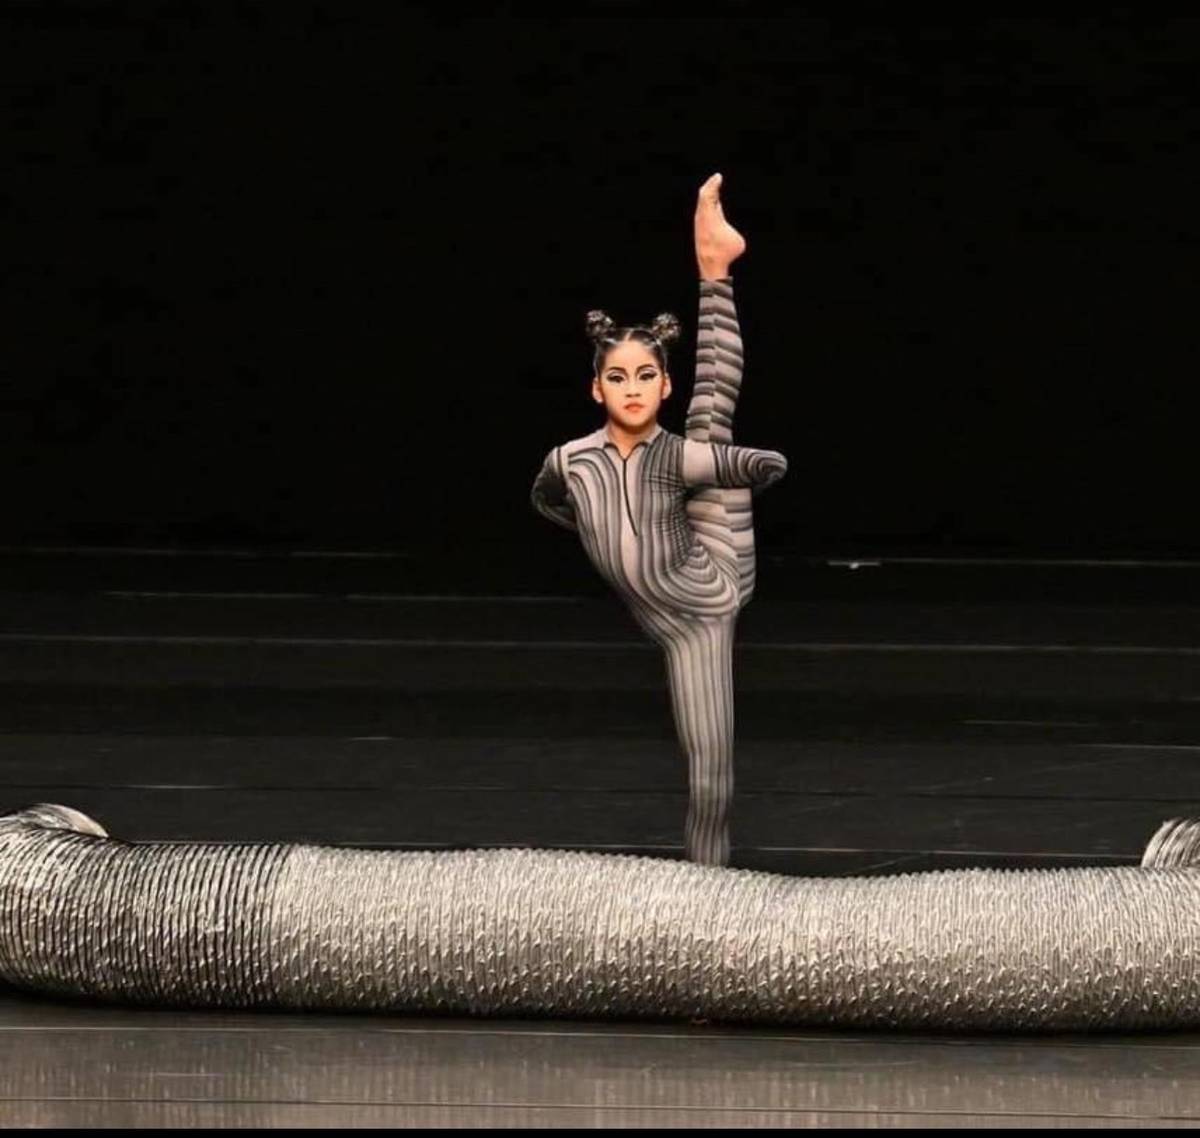 復旦國小學生多子淳在全國賽展現優秀舞技和舞臺魅力，獲得入學中興國中舞蹈班資格